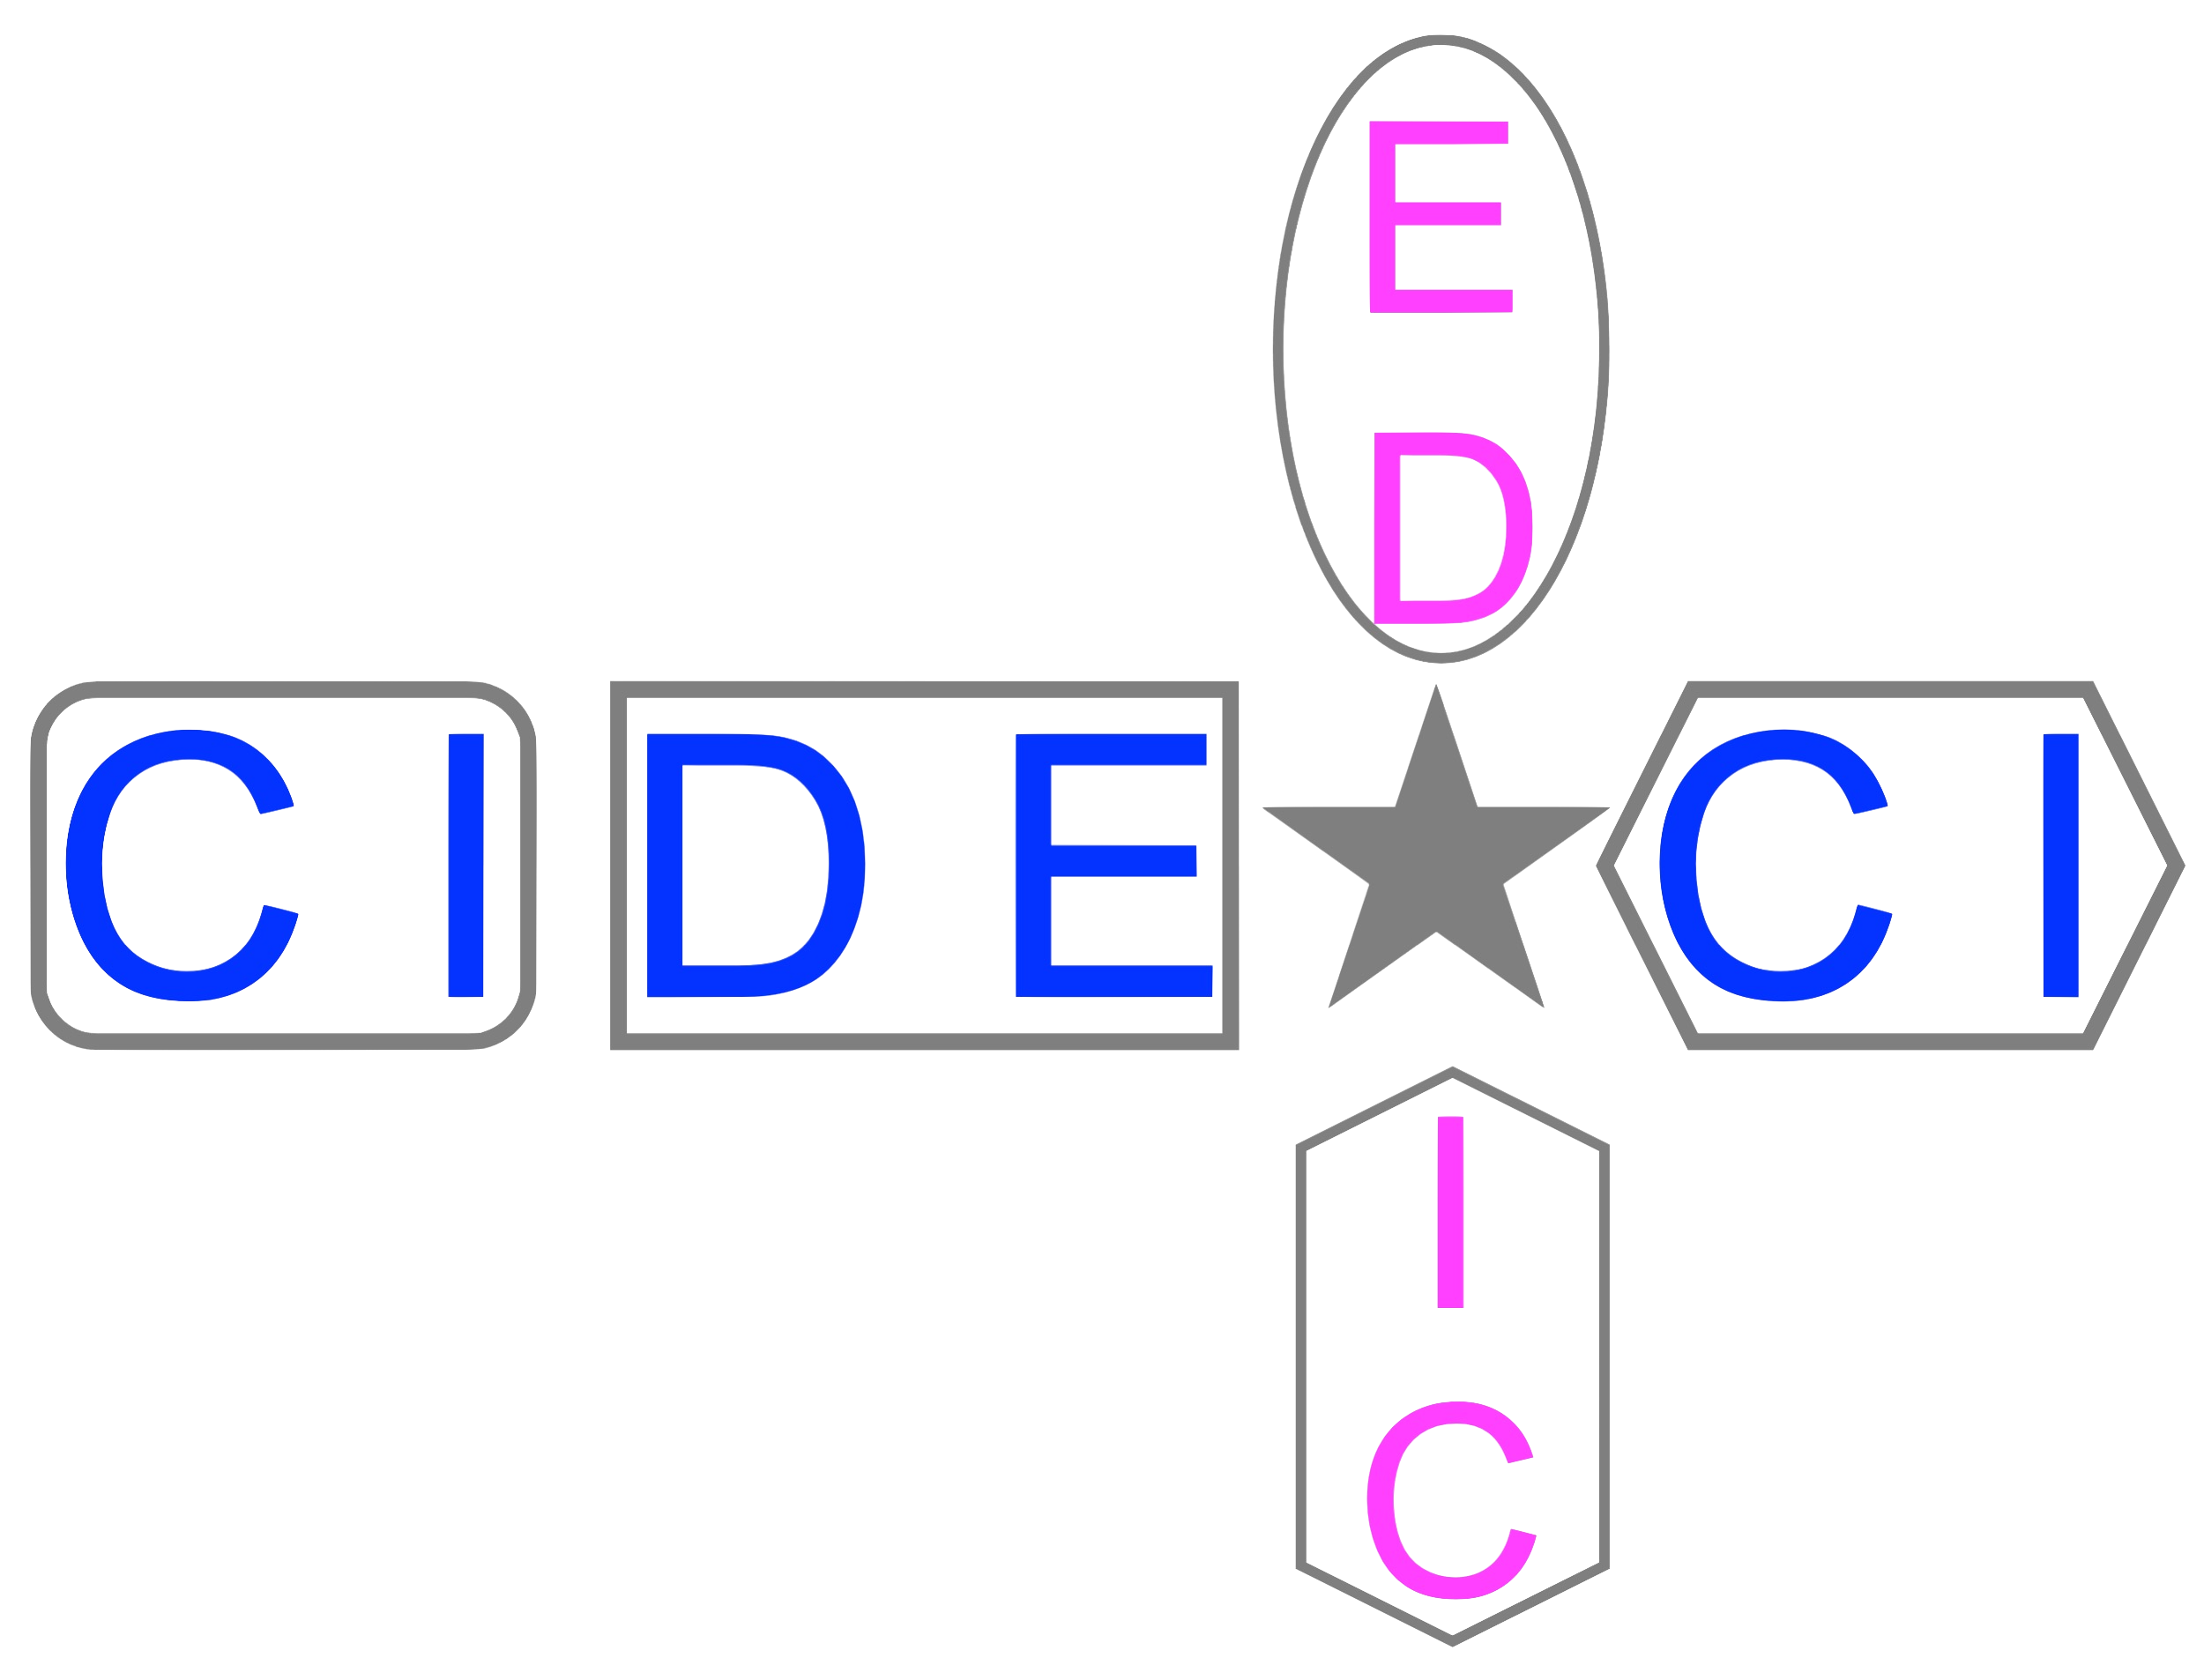 CIDEACI - EDAIC